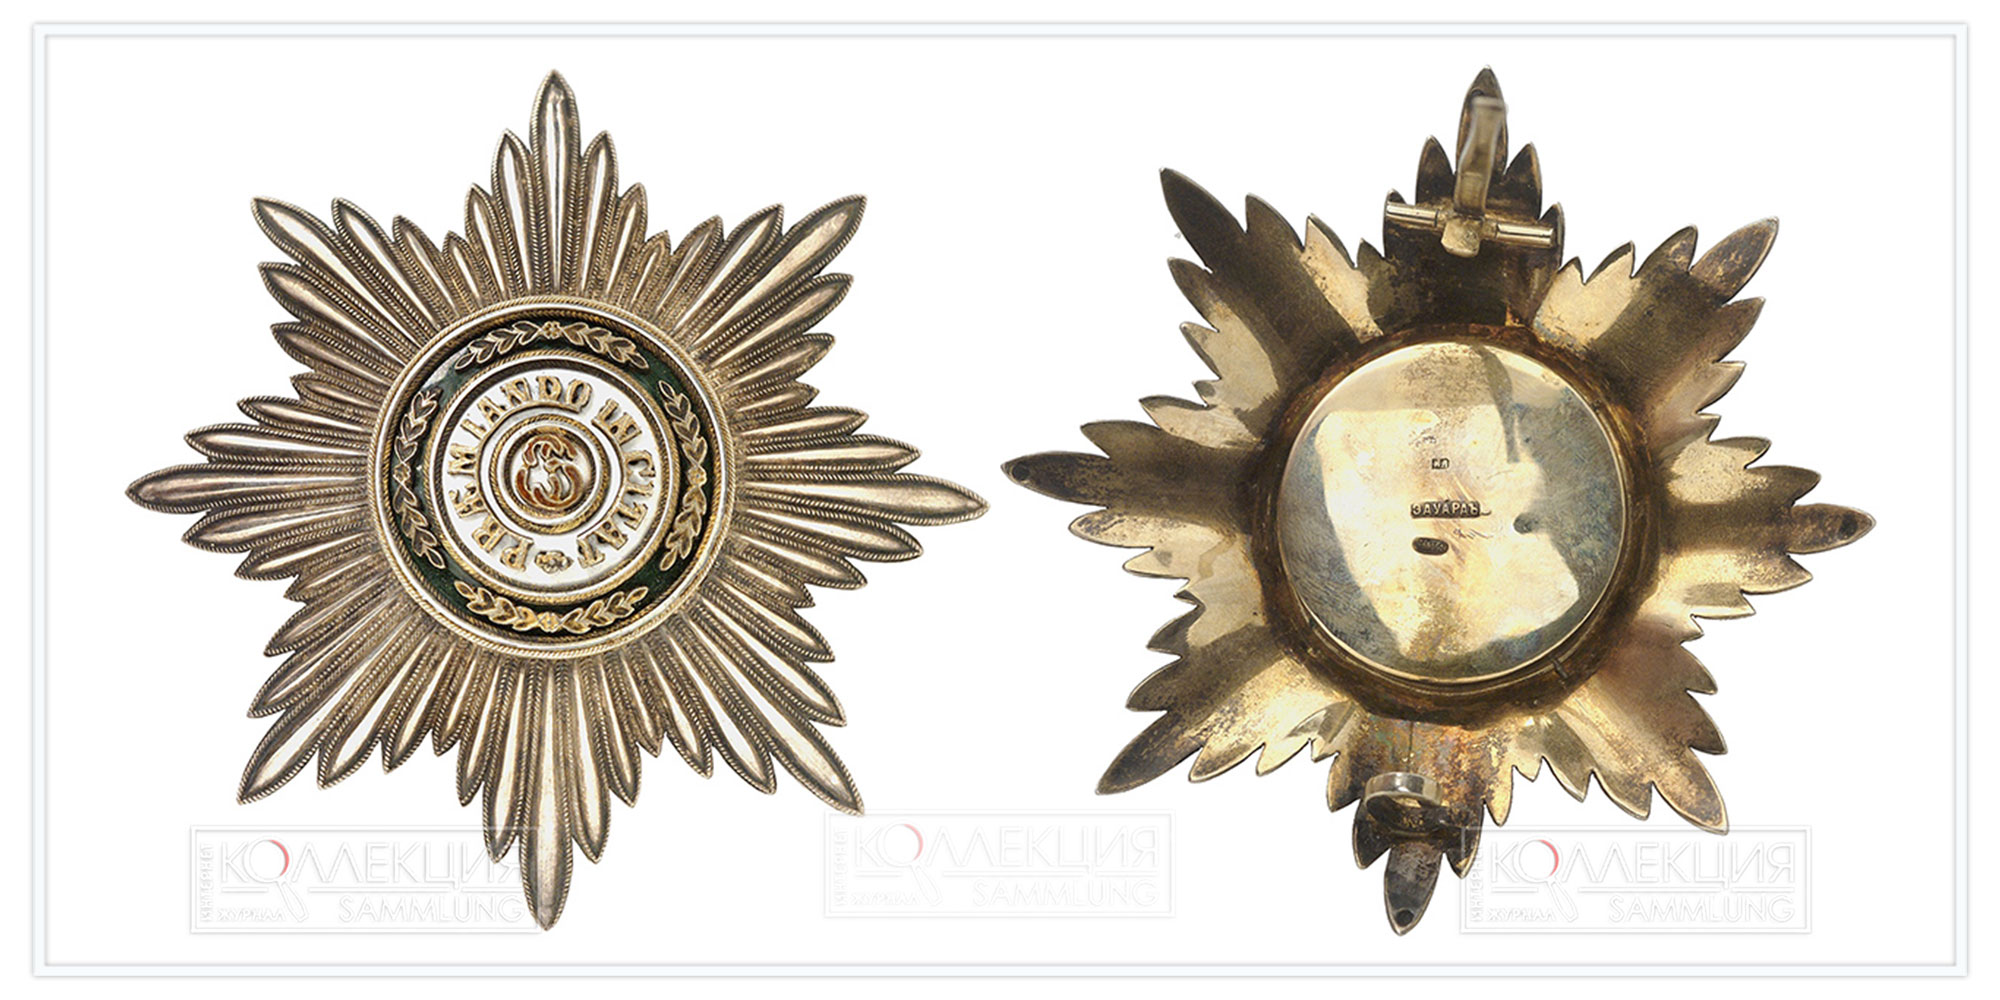 Звезда ордена Св. Станислава 1-2-й степени 1905-1908